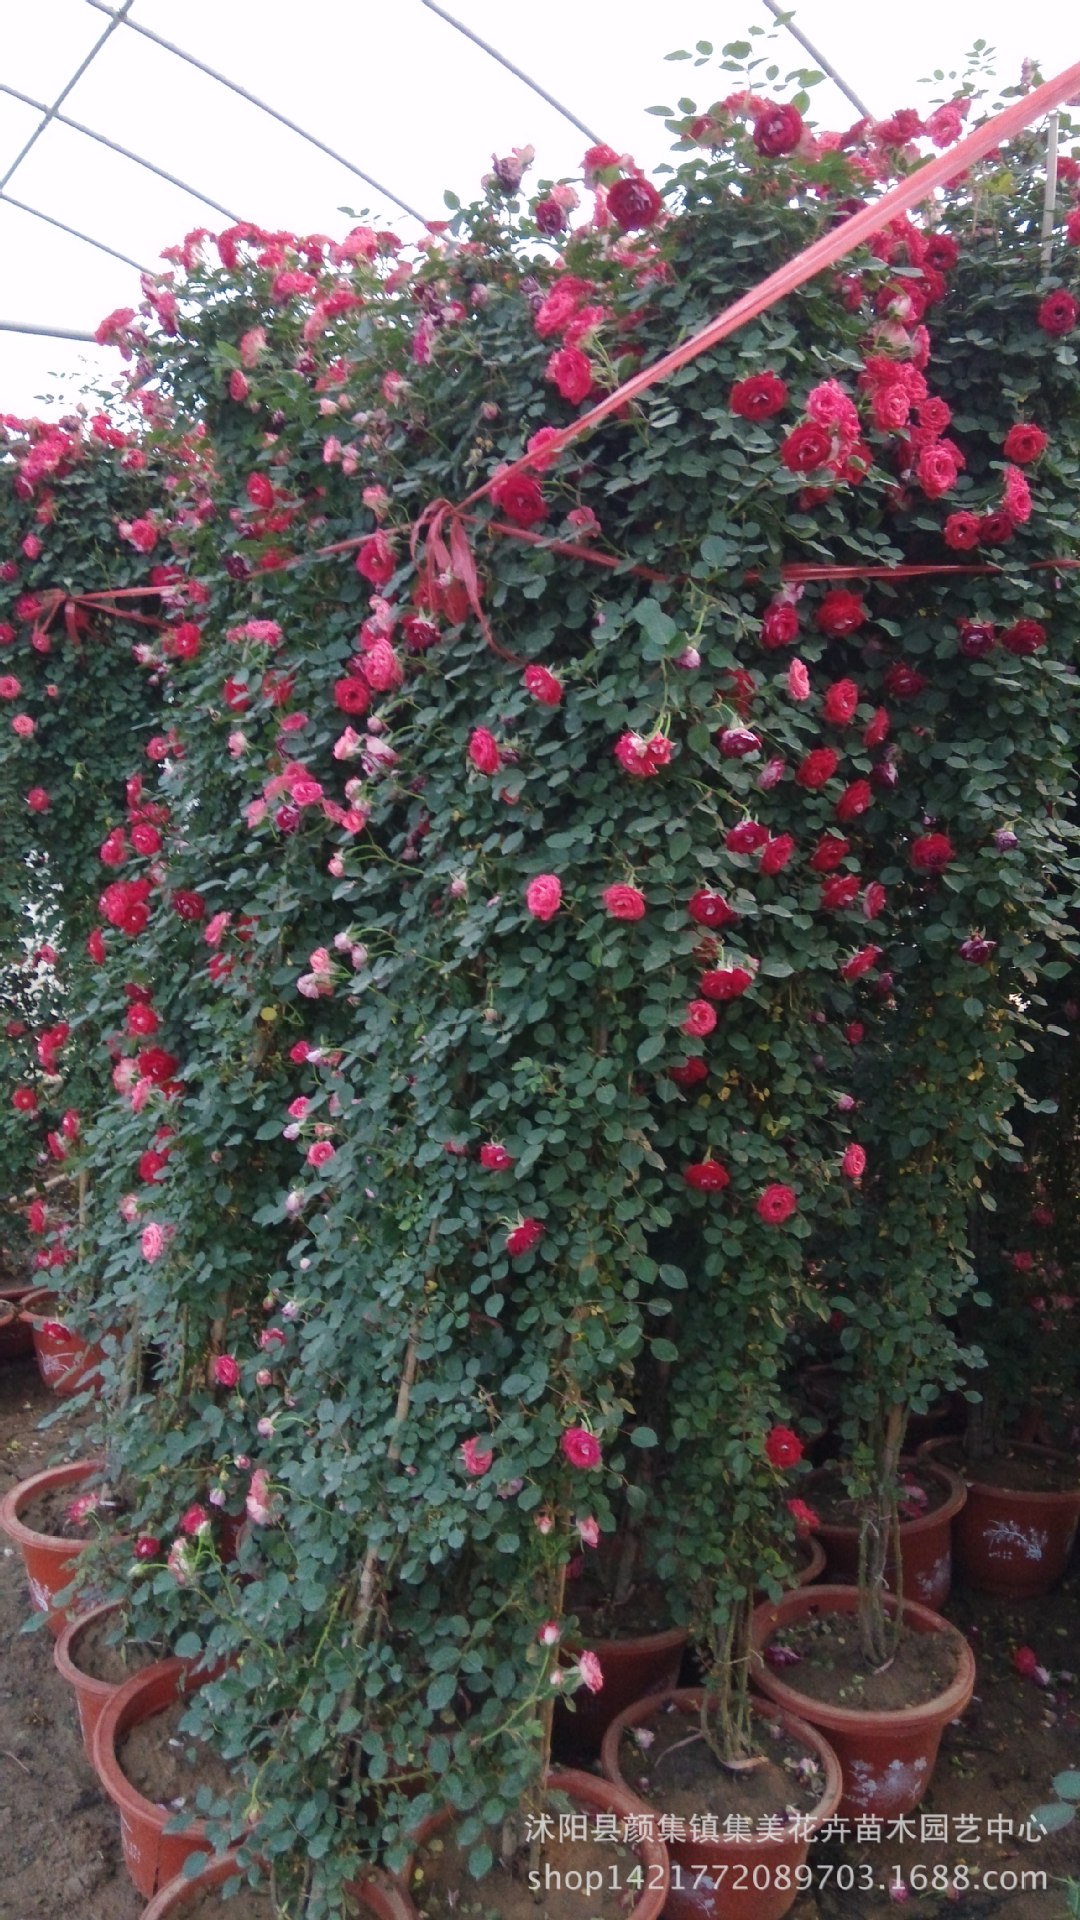 藤本月季是蔷薇科优选品种,花期长达6-8个月,花朵硕大繁多,是高档绿化